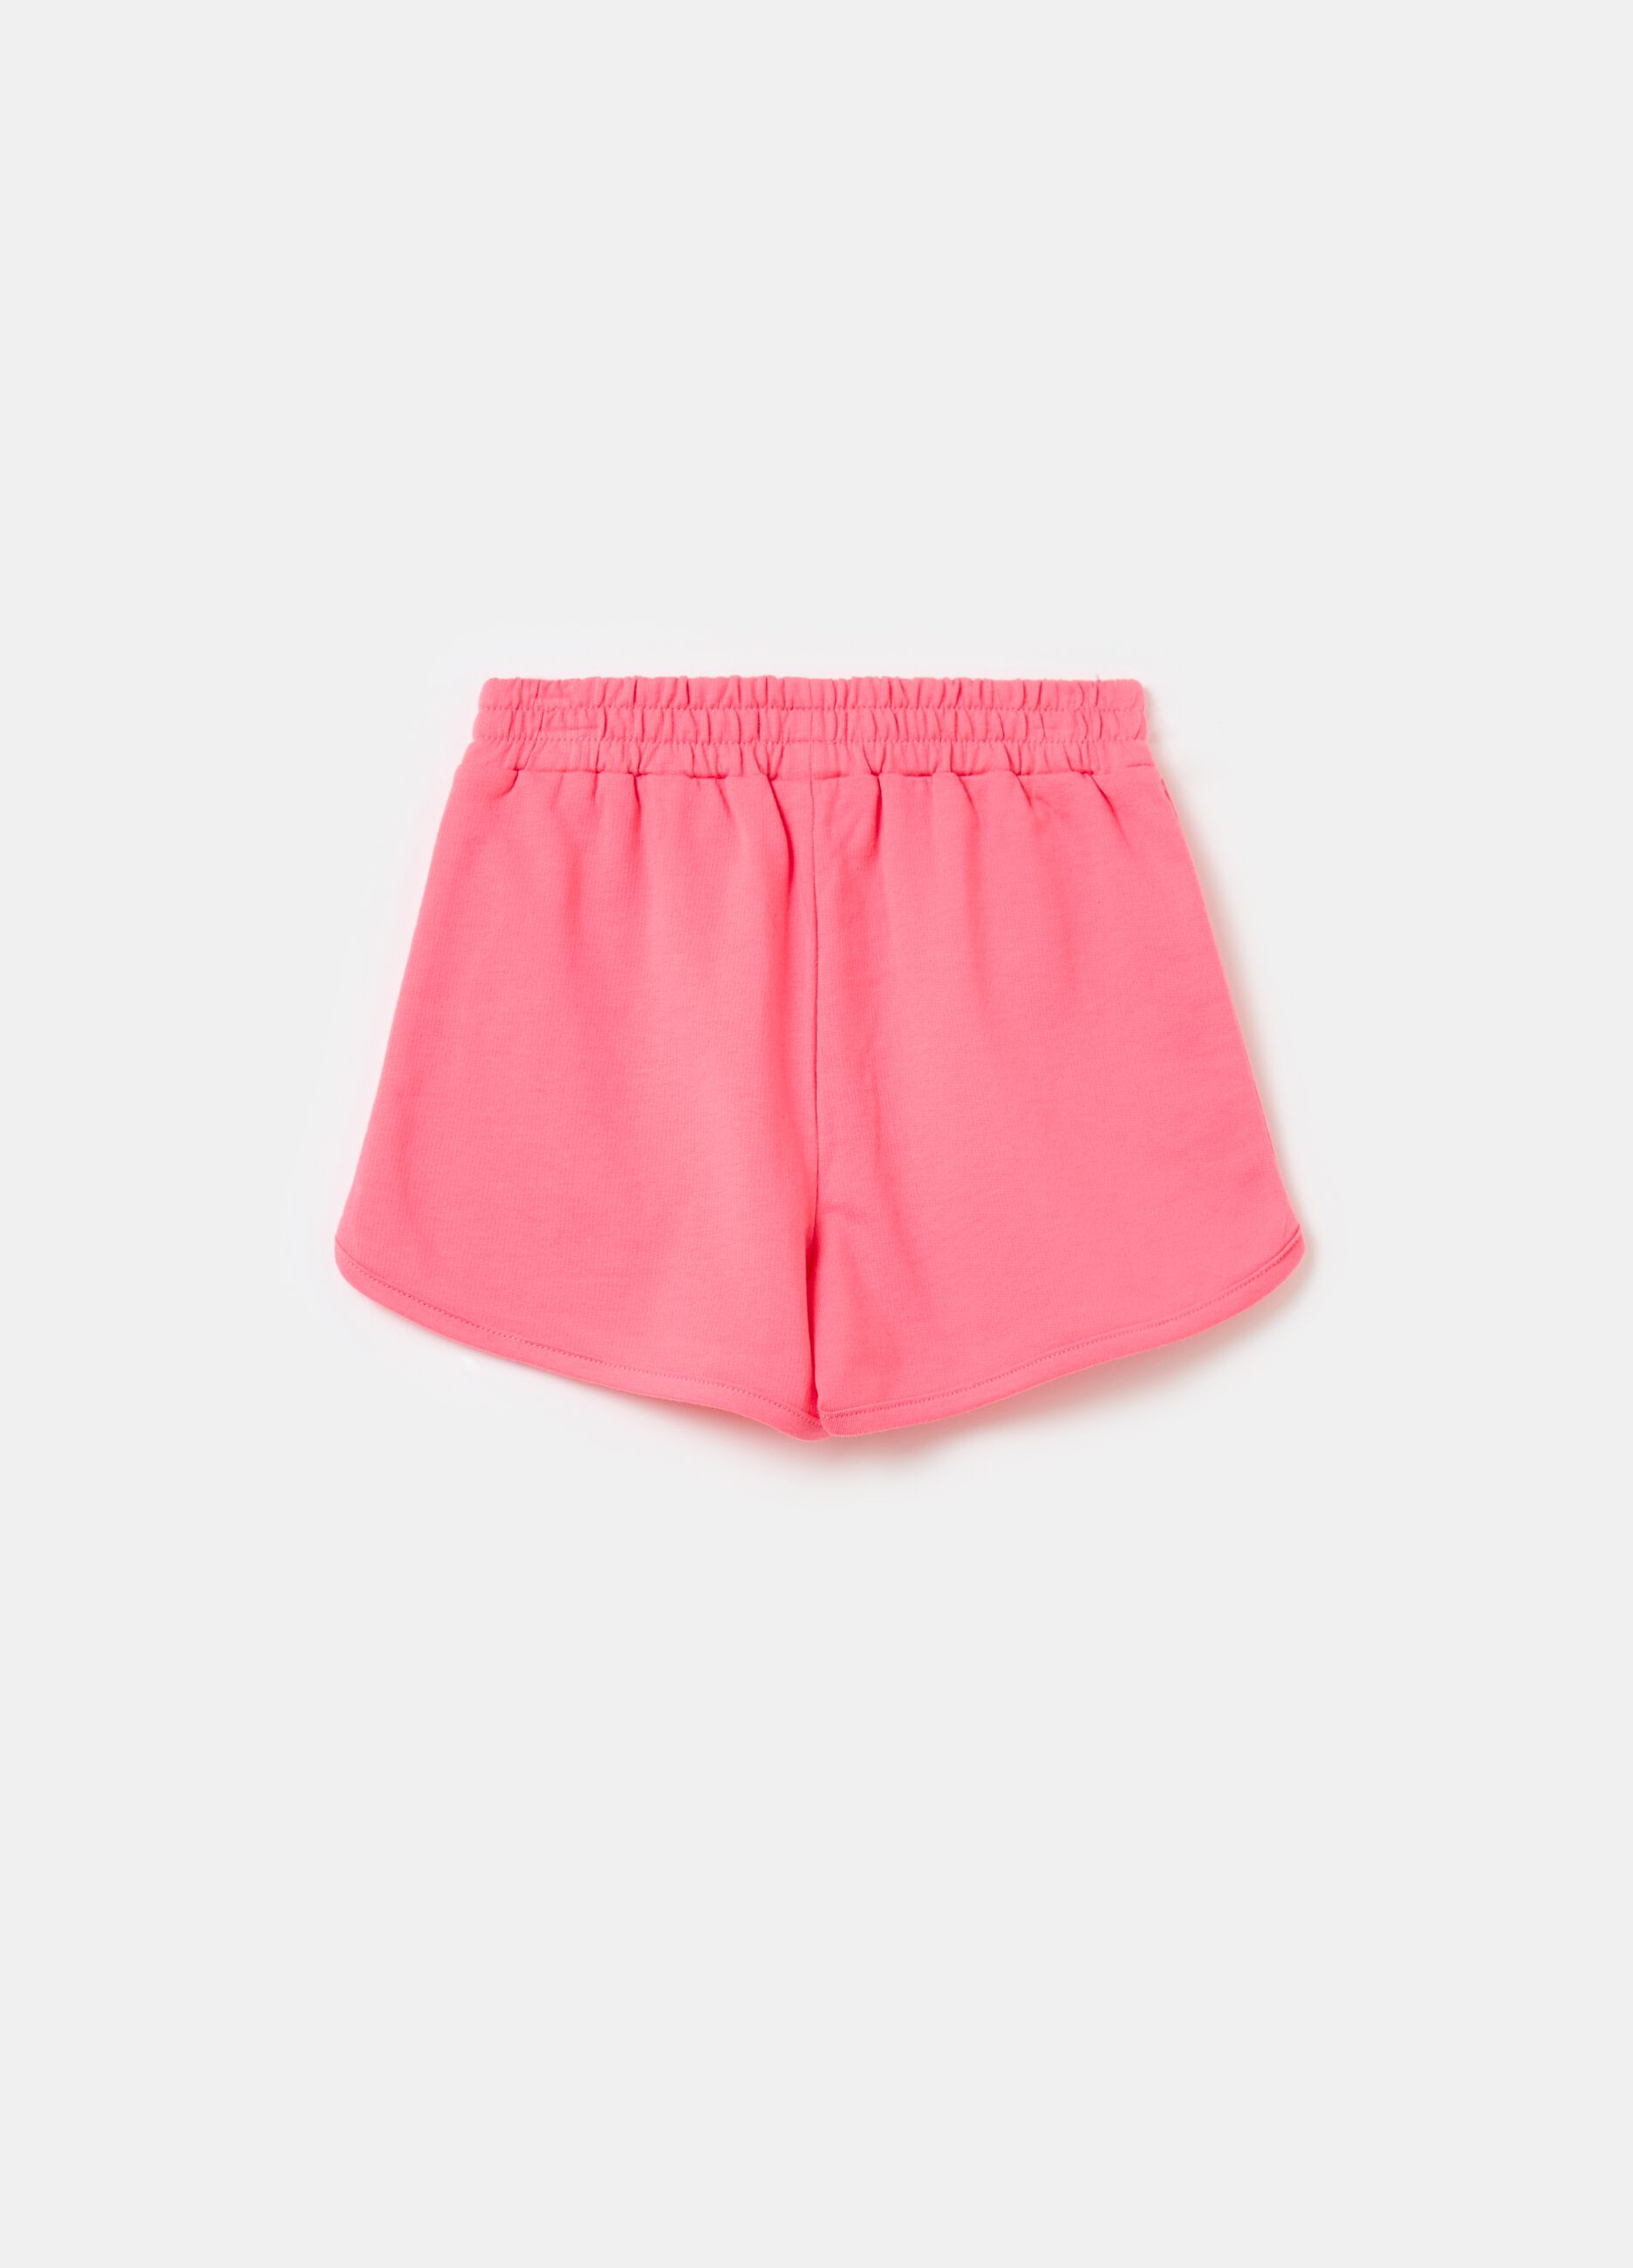 Plush shorts with diamantés